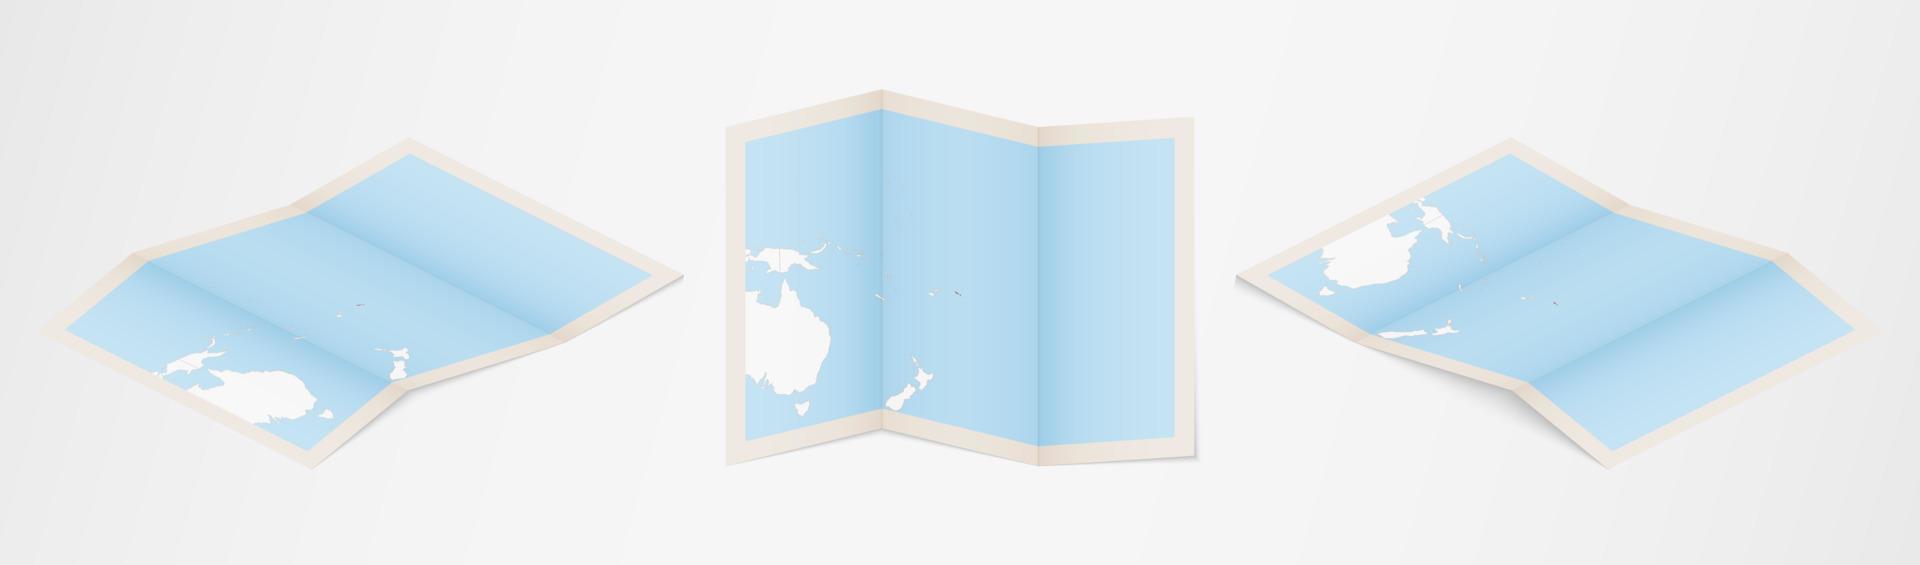 mapa plegado de samoa en tres versiones diferentes. vector